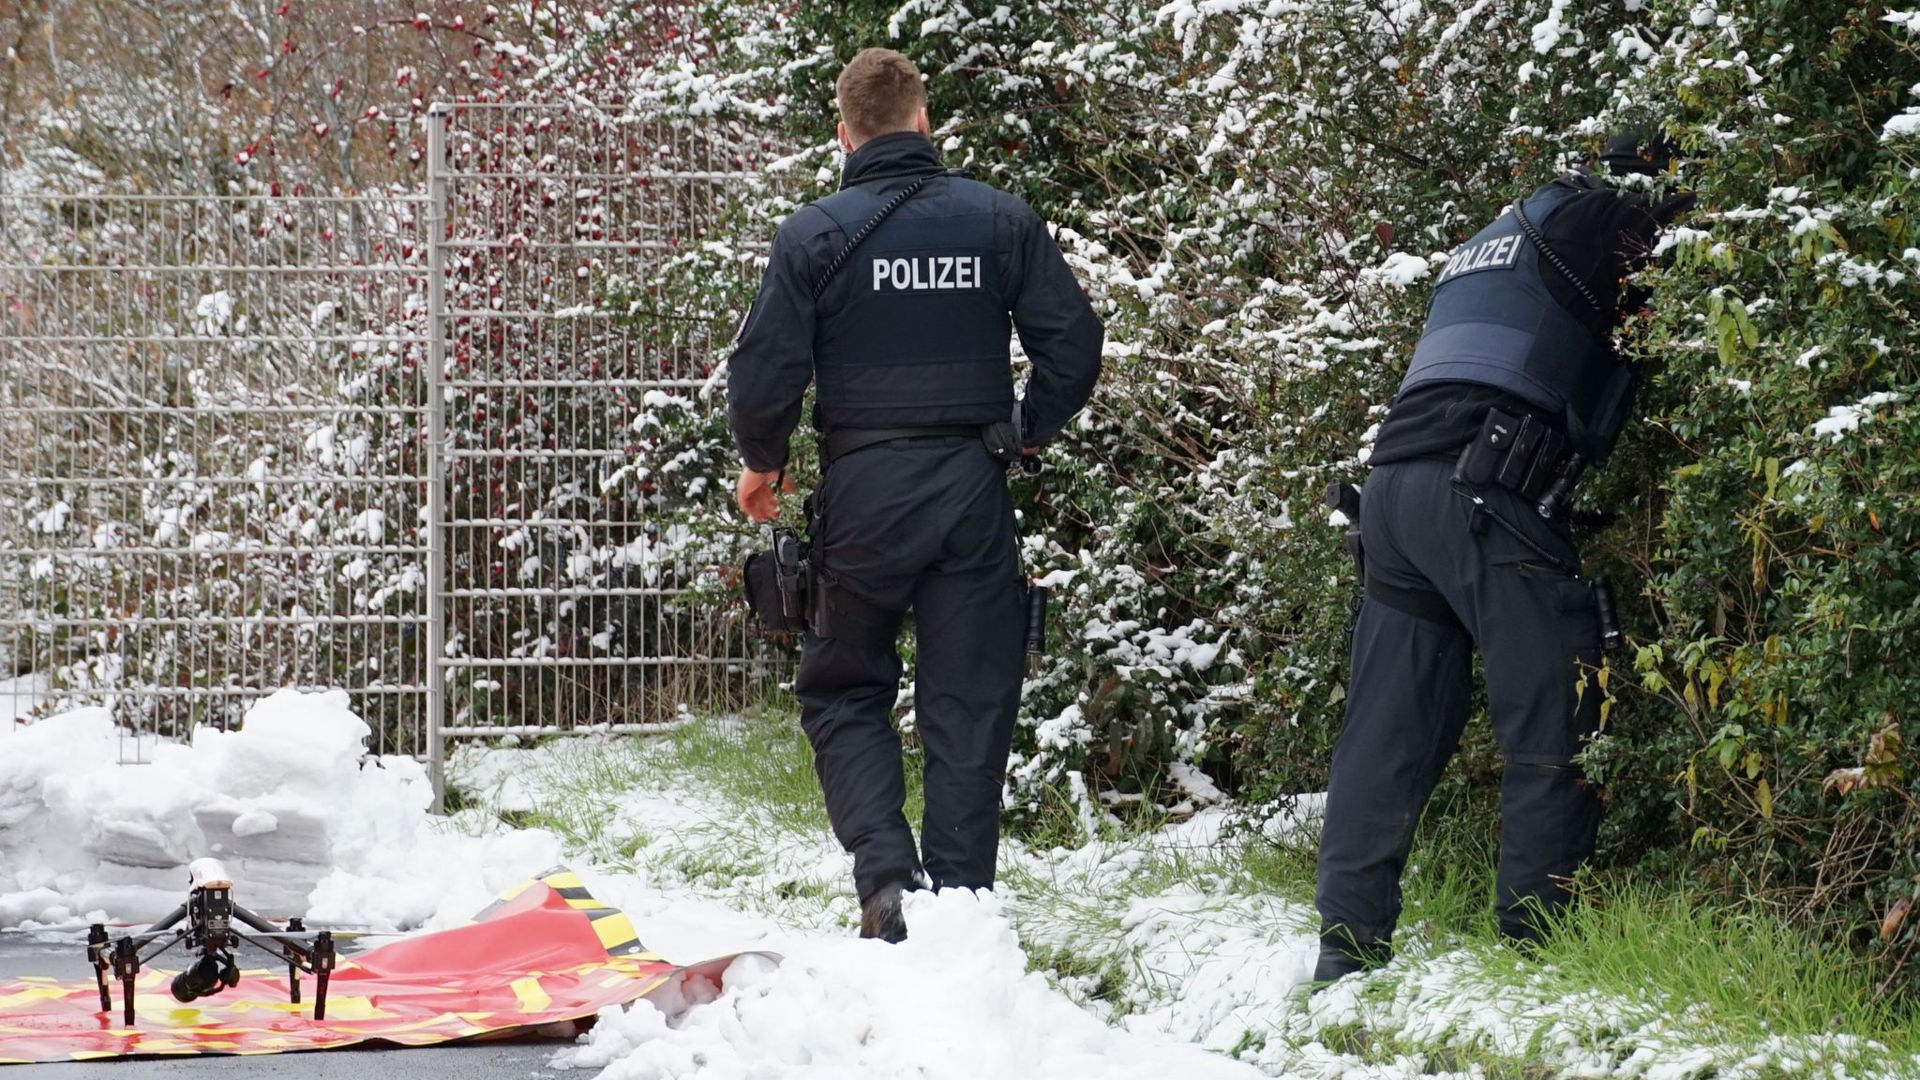 Polizisten suchen nach der Zweijährigen, die am am Montagabend in einem unbeobachteten Moment die elterliche Wohnung in einem Mehrfamilienhaus in Fulda verlassen hatte.